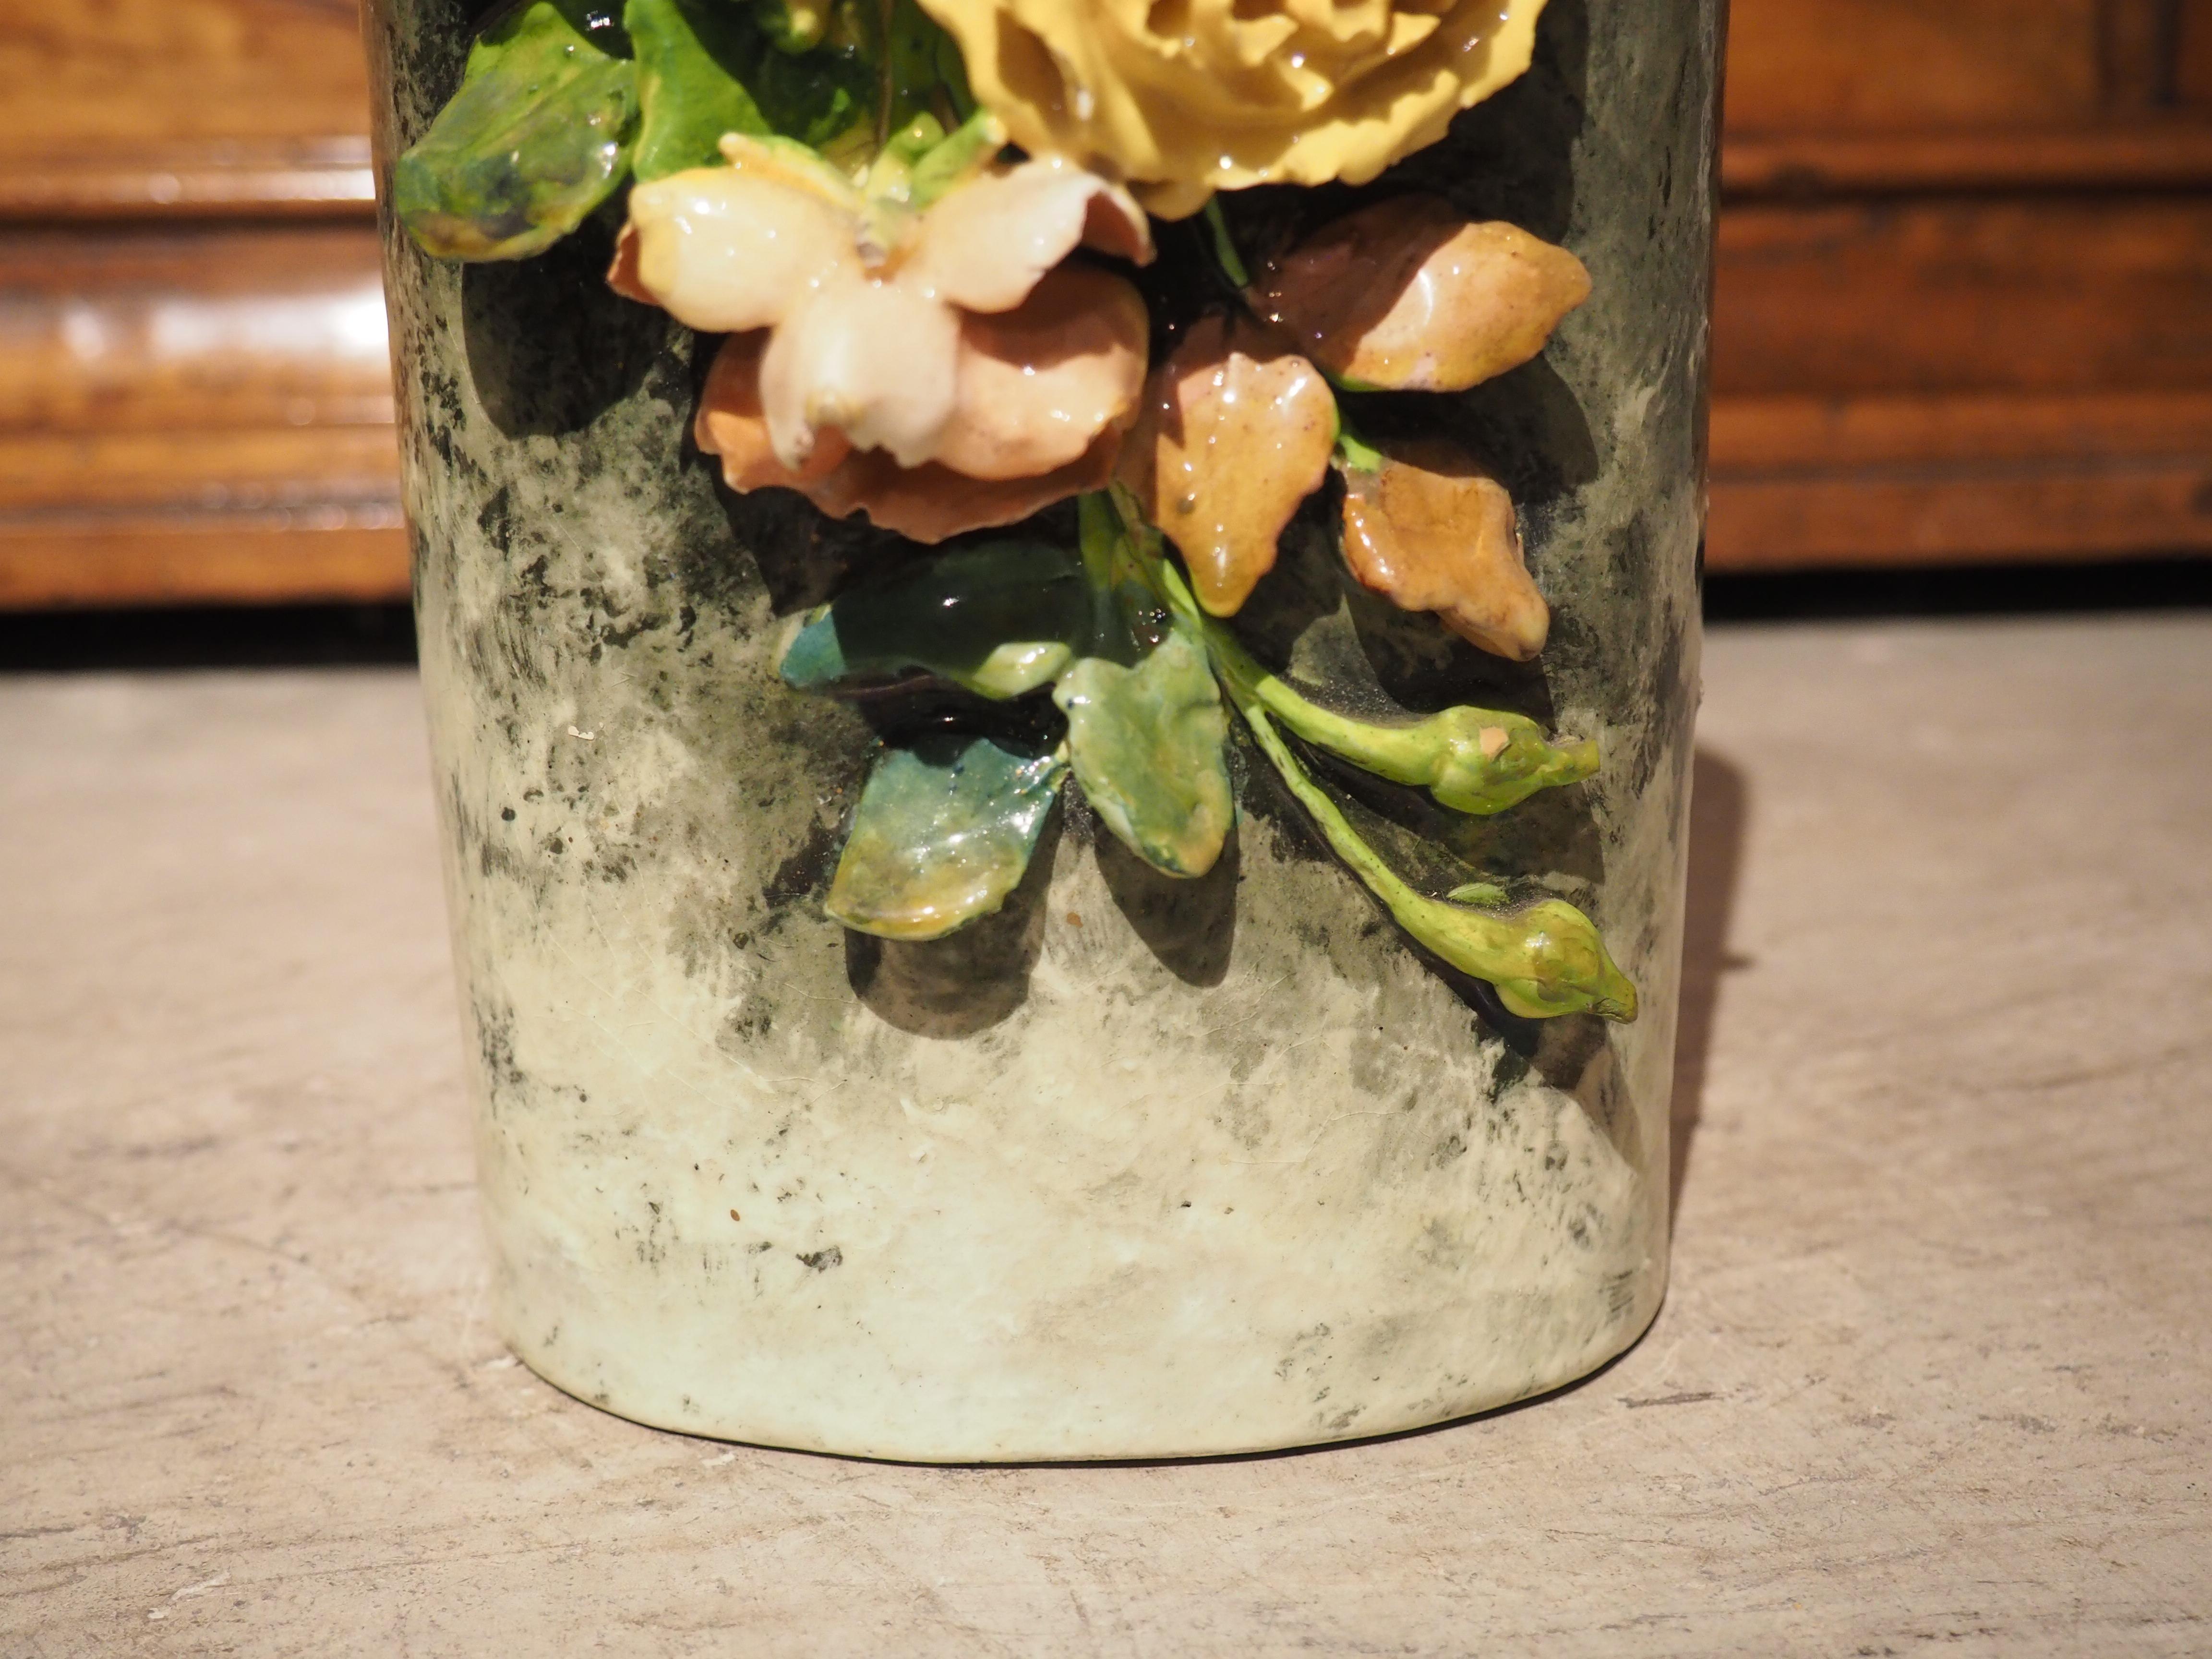 Peint à la main en France dans les années 1800, ce magnifique vase cylindrique en Barbotine présente une belle exposition de fleurs fines comme du papier, fabriquées à partir d'argile kaolinique. Ces fleurs en gros relief sont très délicates et leur